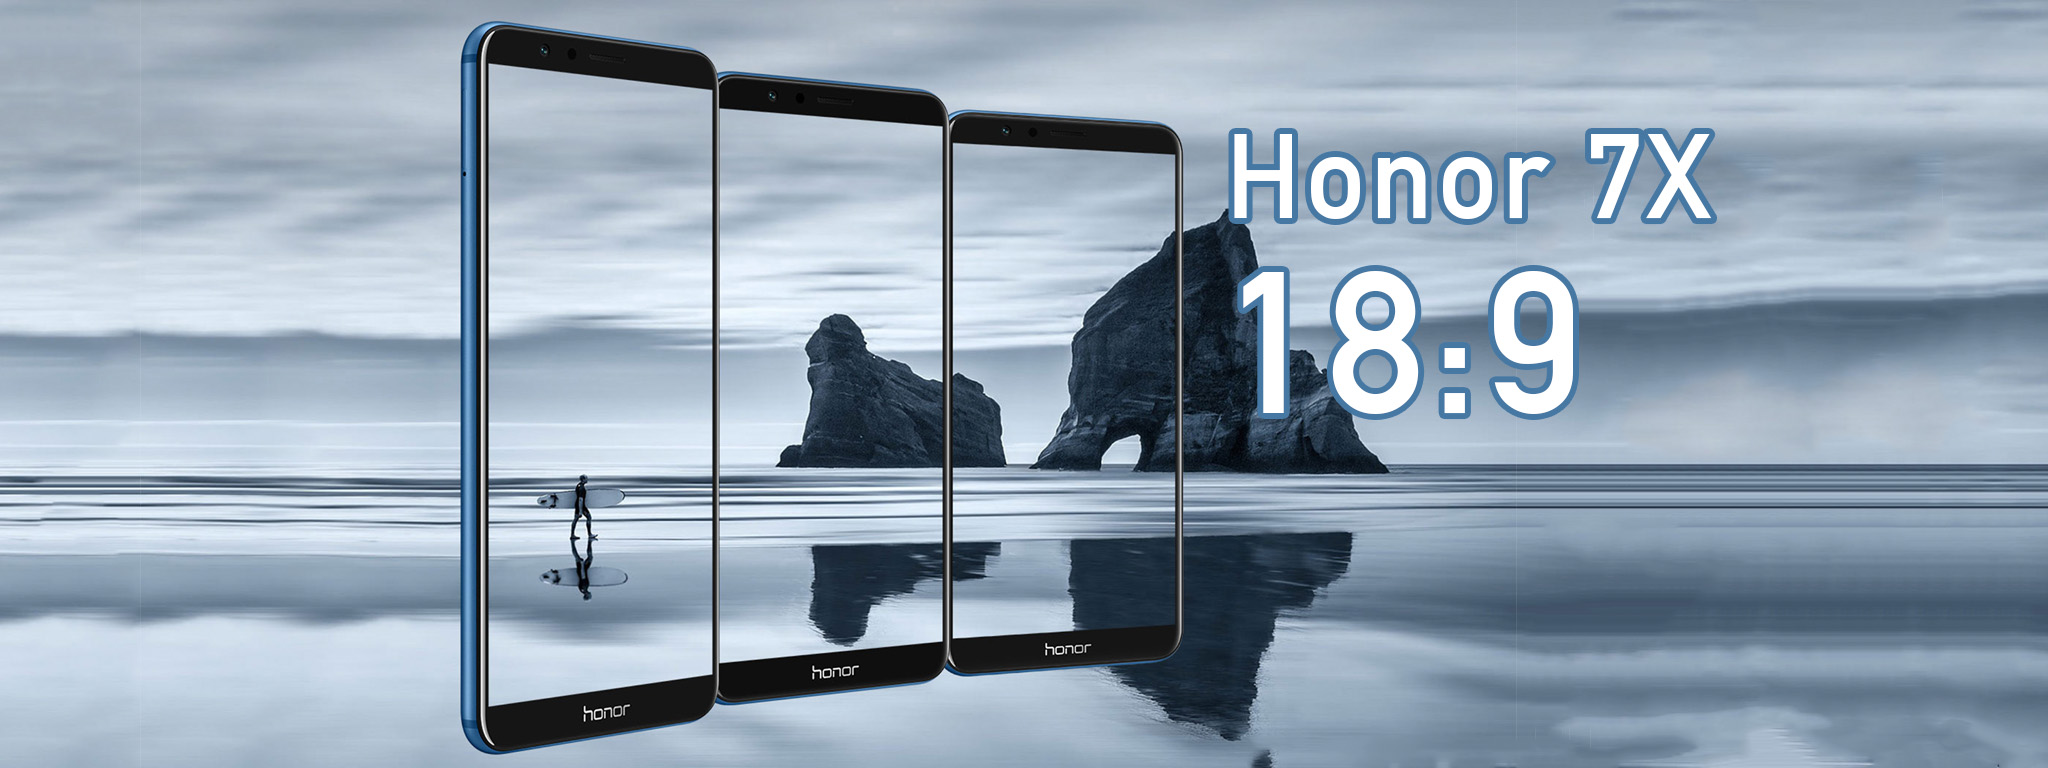 Huawei Honor 7X: Màn hình 18:9, 4 GB RAM, camera kép, giá từ 200 USD